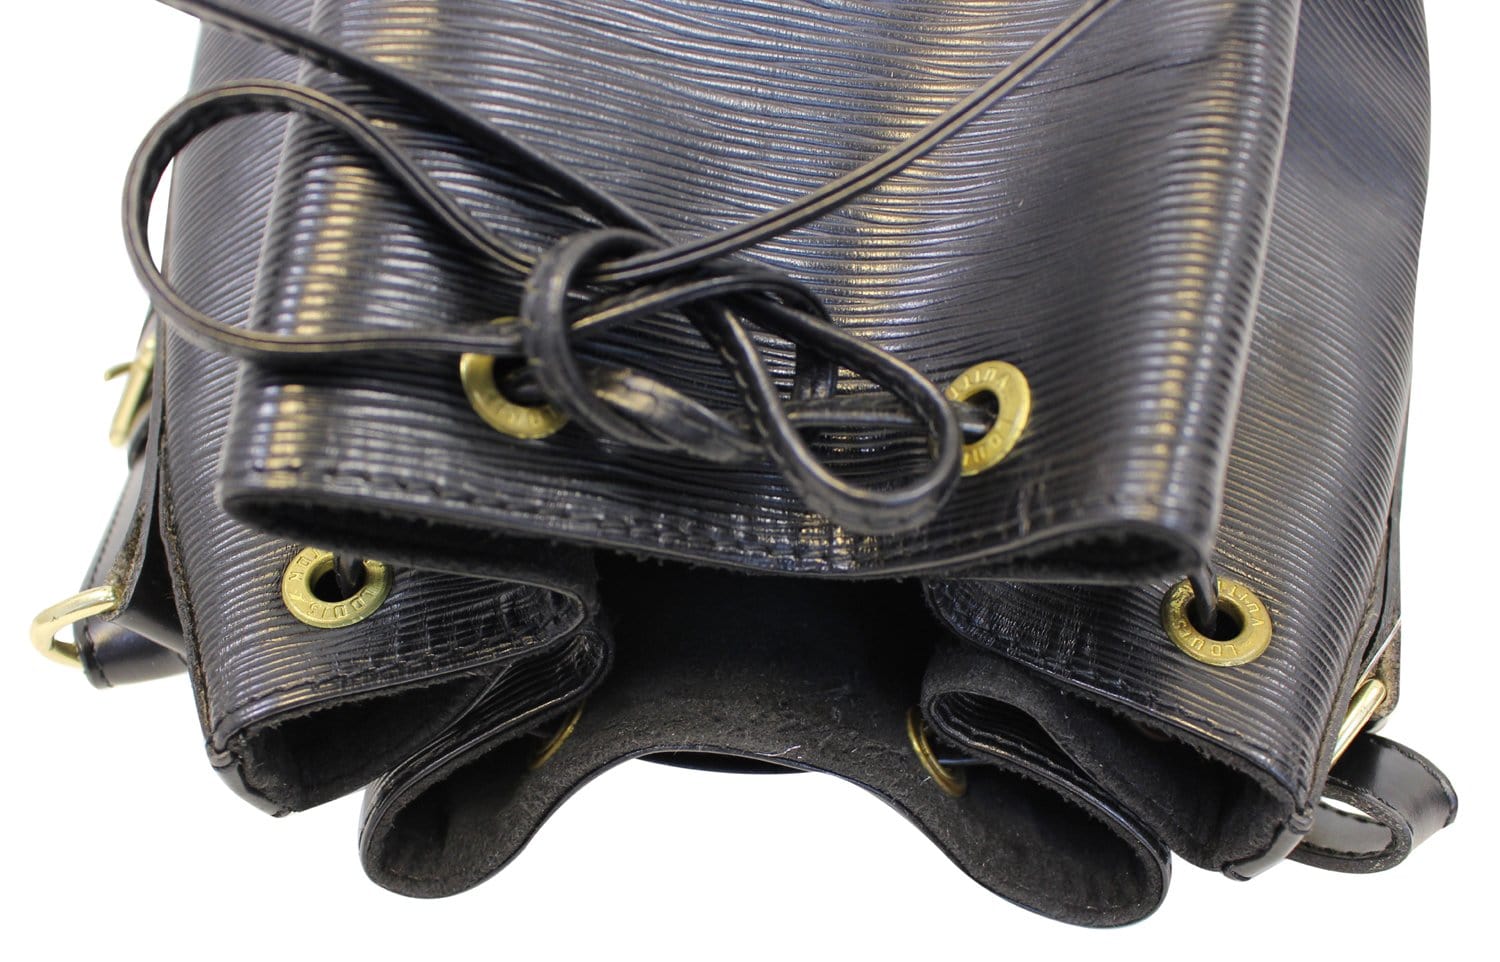 LOUIS VUITTON Epi Leather Noe Black Shoulder Bag - Sale